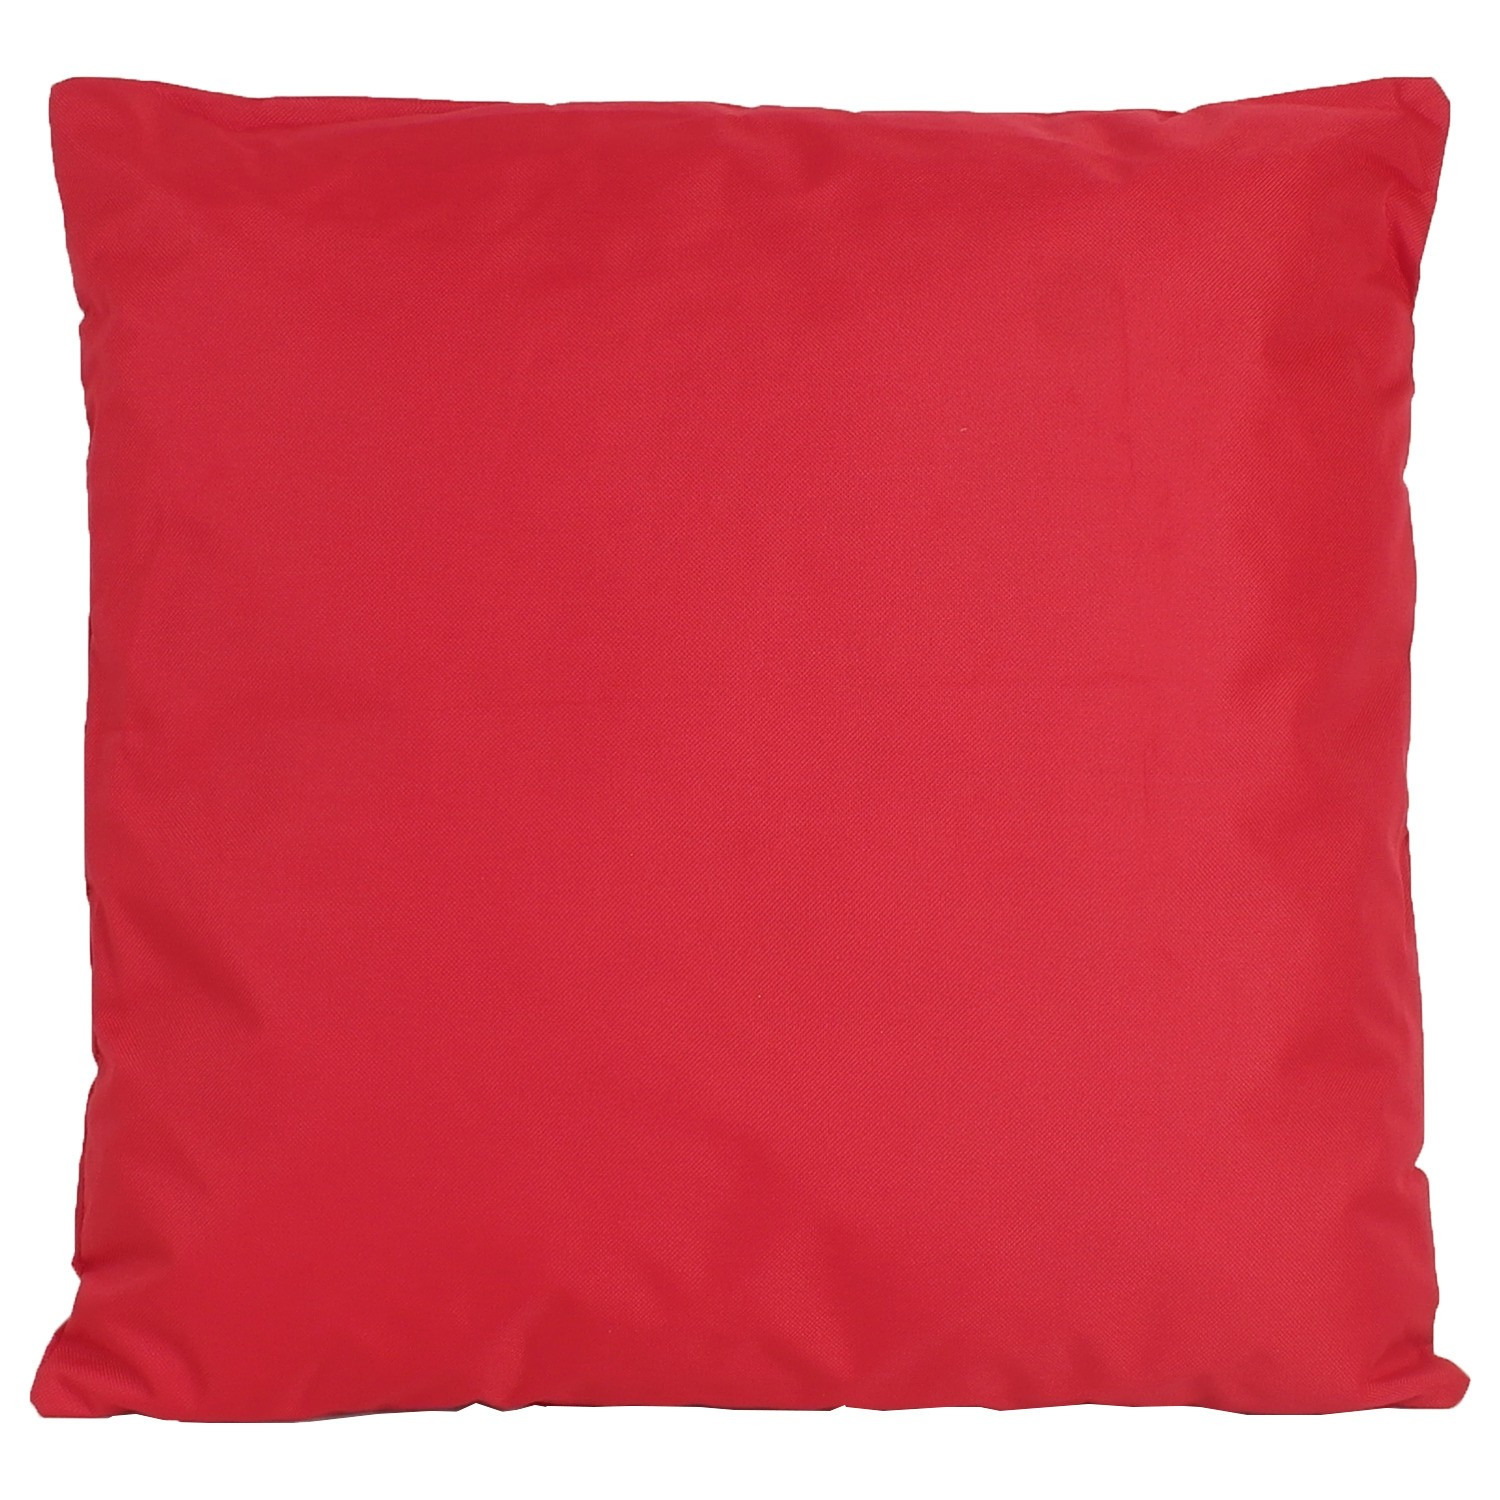 1x Bank/Sier kussens voor binnen en buiten in de kleur rood 45 x 45 cm